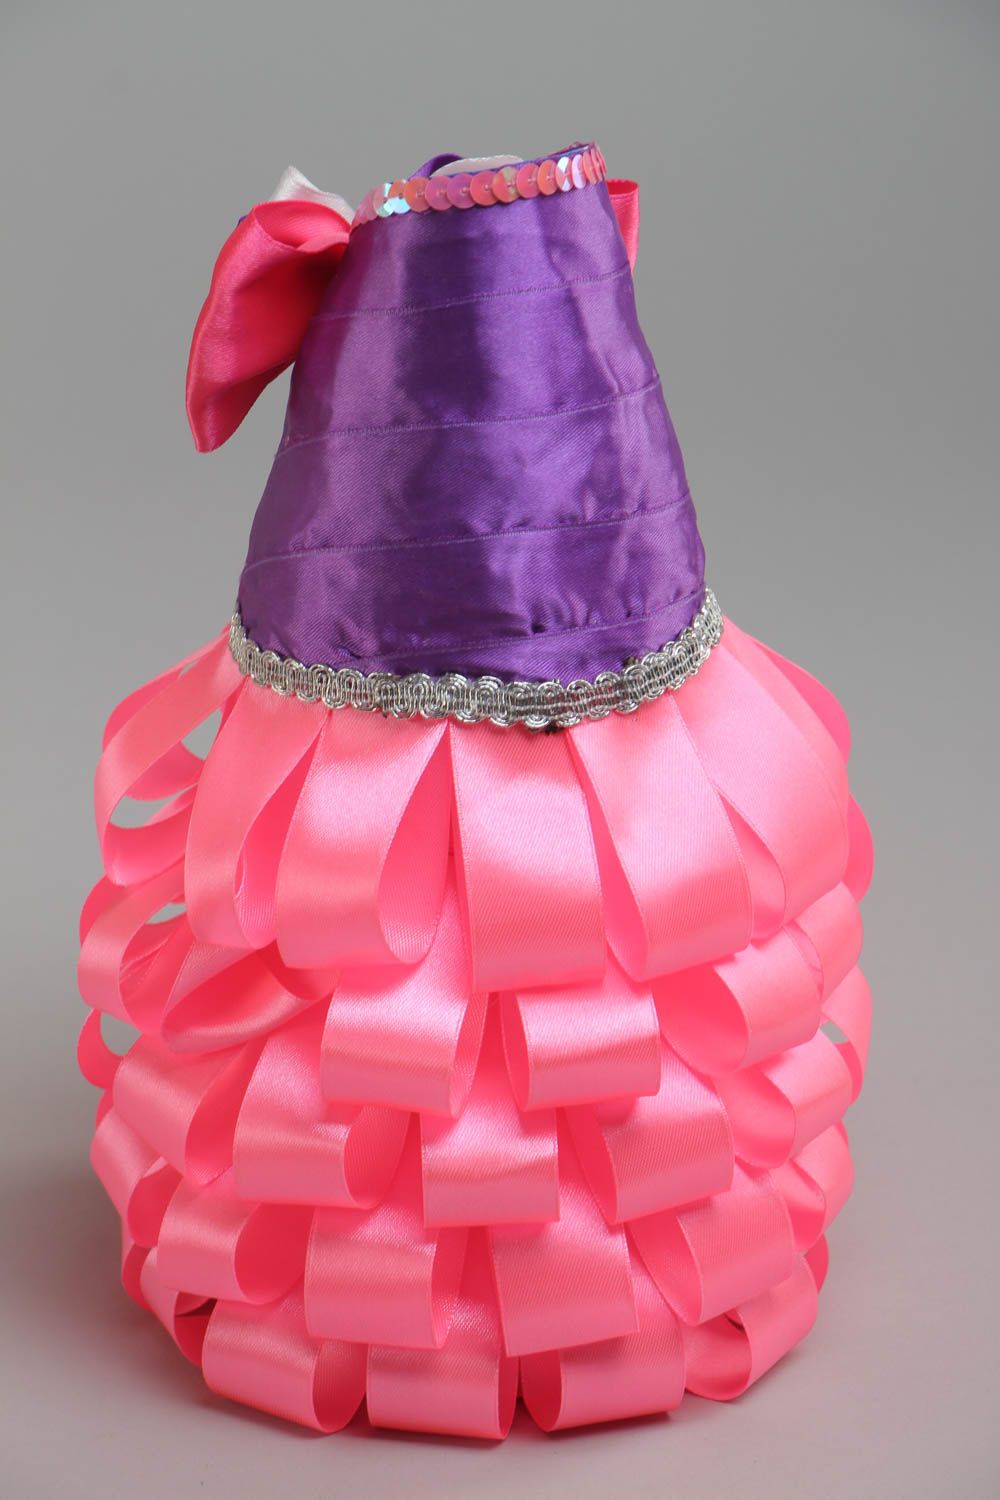 Бутылка из атласных лент ручной работы декоративная розовая нарядная интерьерная фото 4